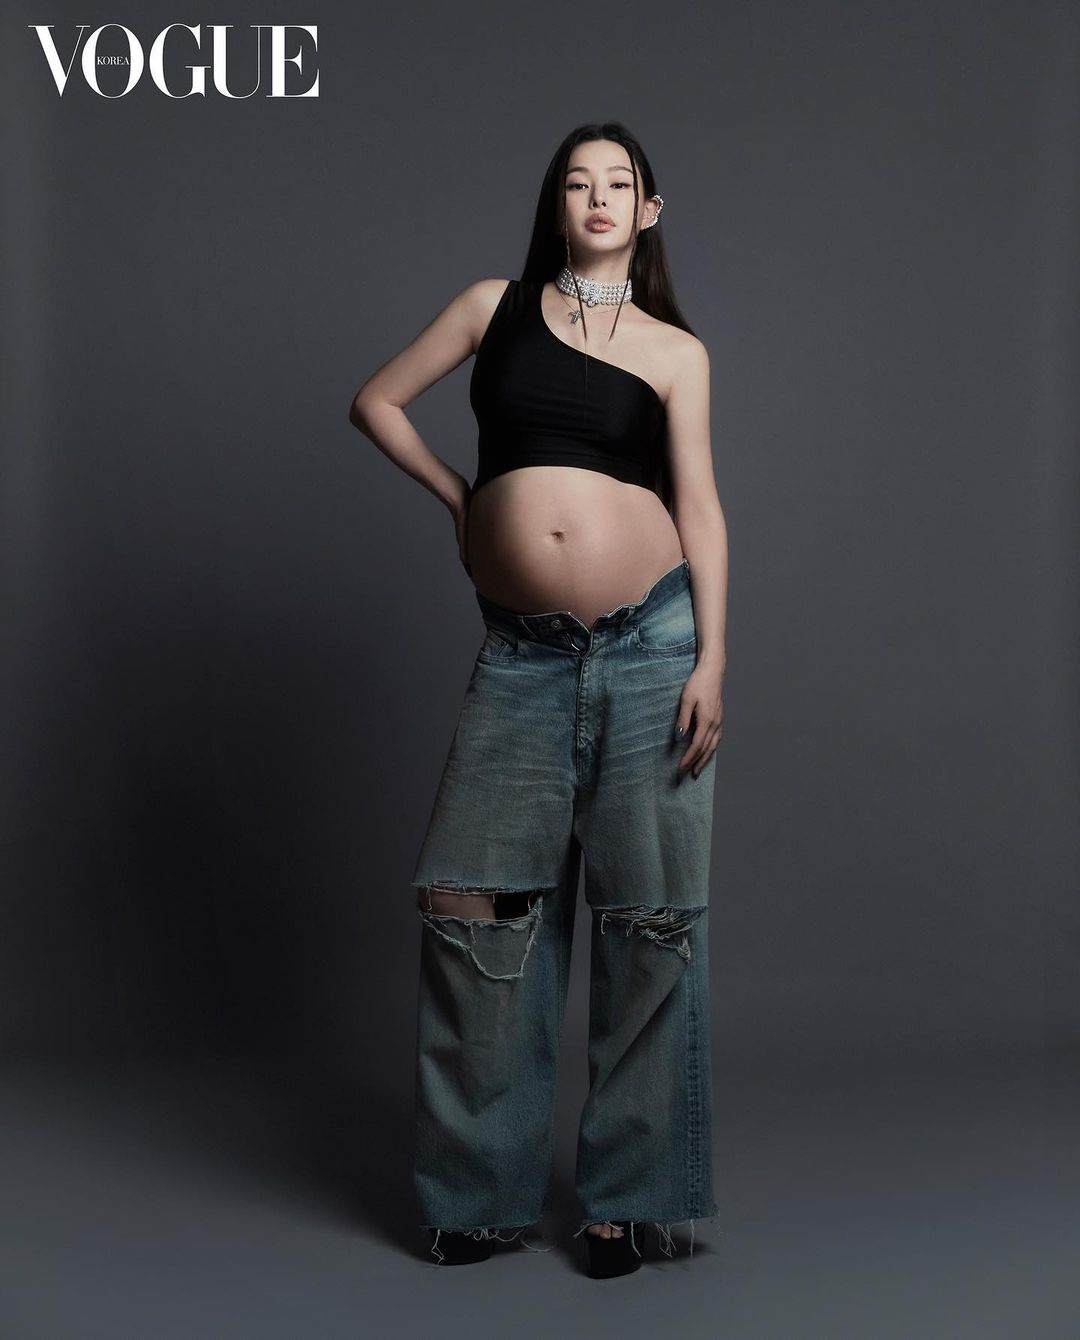 Honey Lee ở tuần 36 thai kỳ. Năm 2015, cô đứng đầu danh sách 11 mỹ nhân Hàn Quốc sexy nhất mọi thời, do tạp chí Playboy (Mỹ) bình chọn.